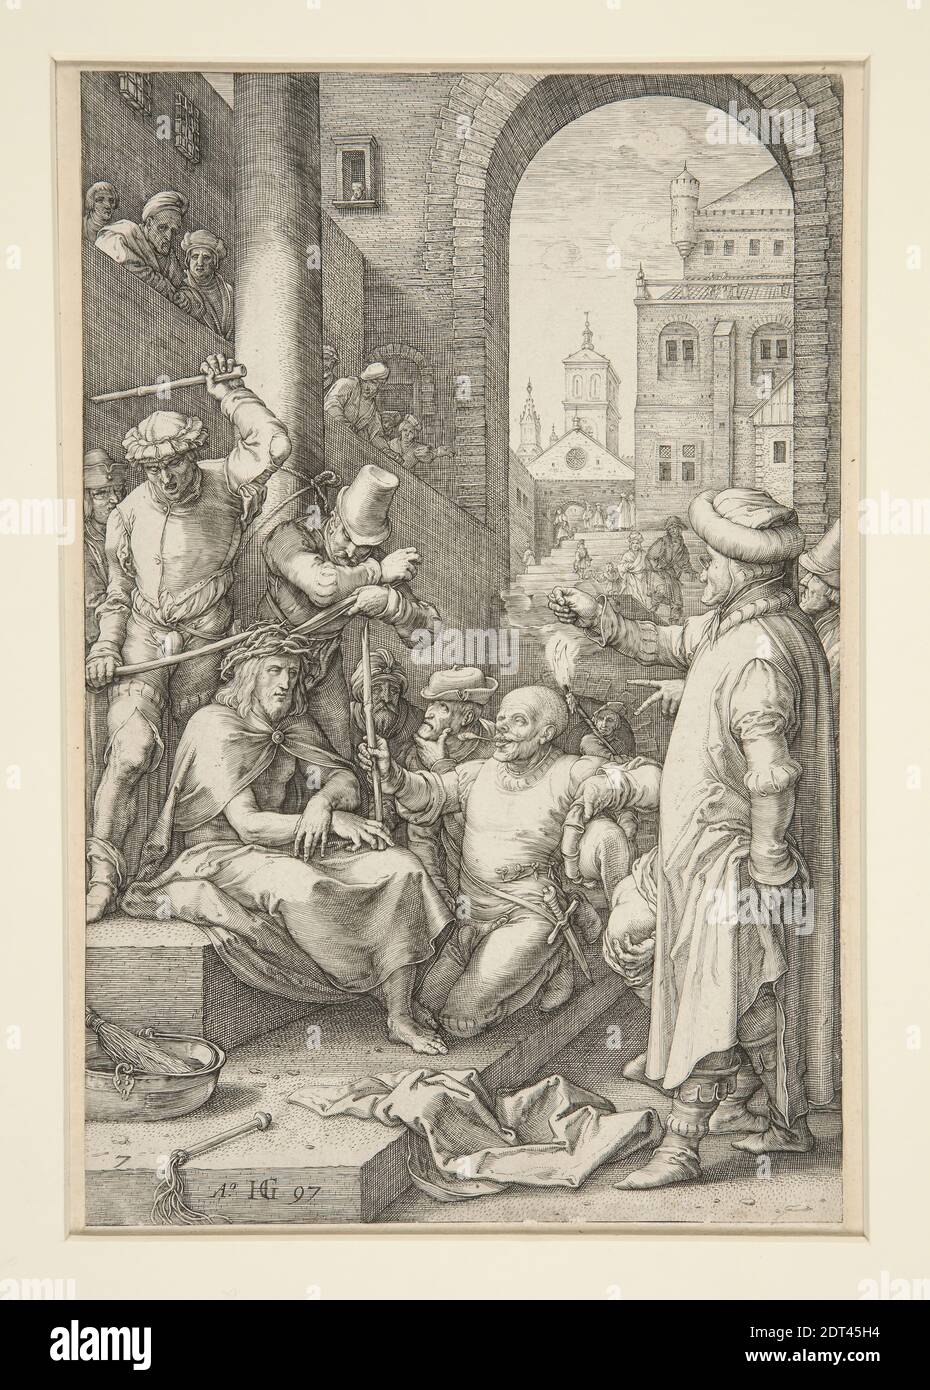 Artista: Hendrick Goltzius, olandese, 1558–1617, Cristo incoronato con spine, dalla Passione, n. 7 in una serie di 12 incisioni, incisione, 19.9 × 13.3 cm (7 13/16 × 5 1/4 in.), Made in the Netherlands, Dutch, XVI secolo, opere su carta - stampe Foto Stock